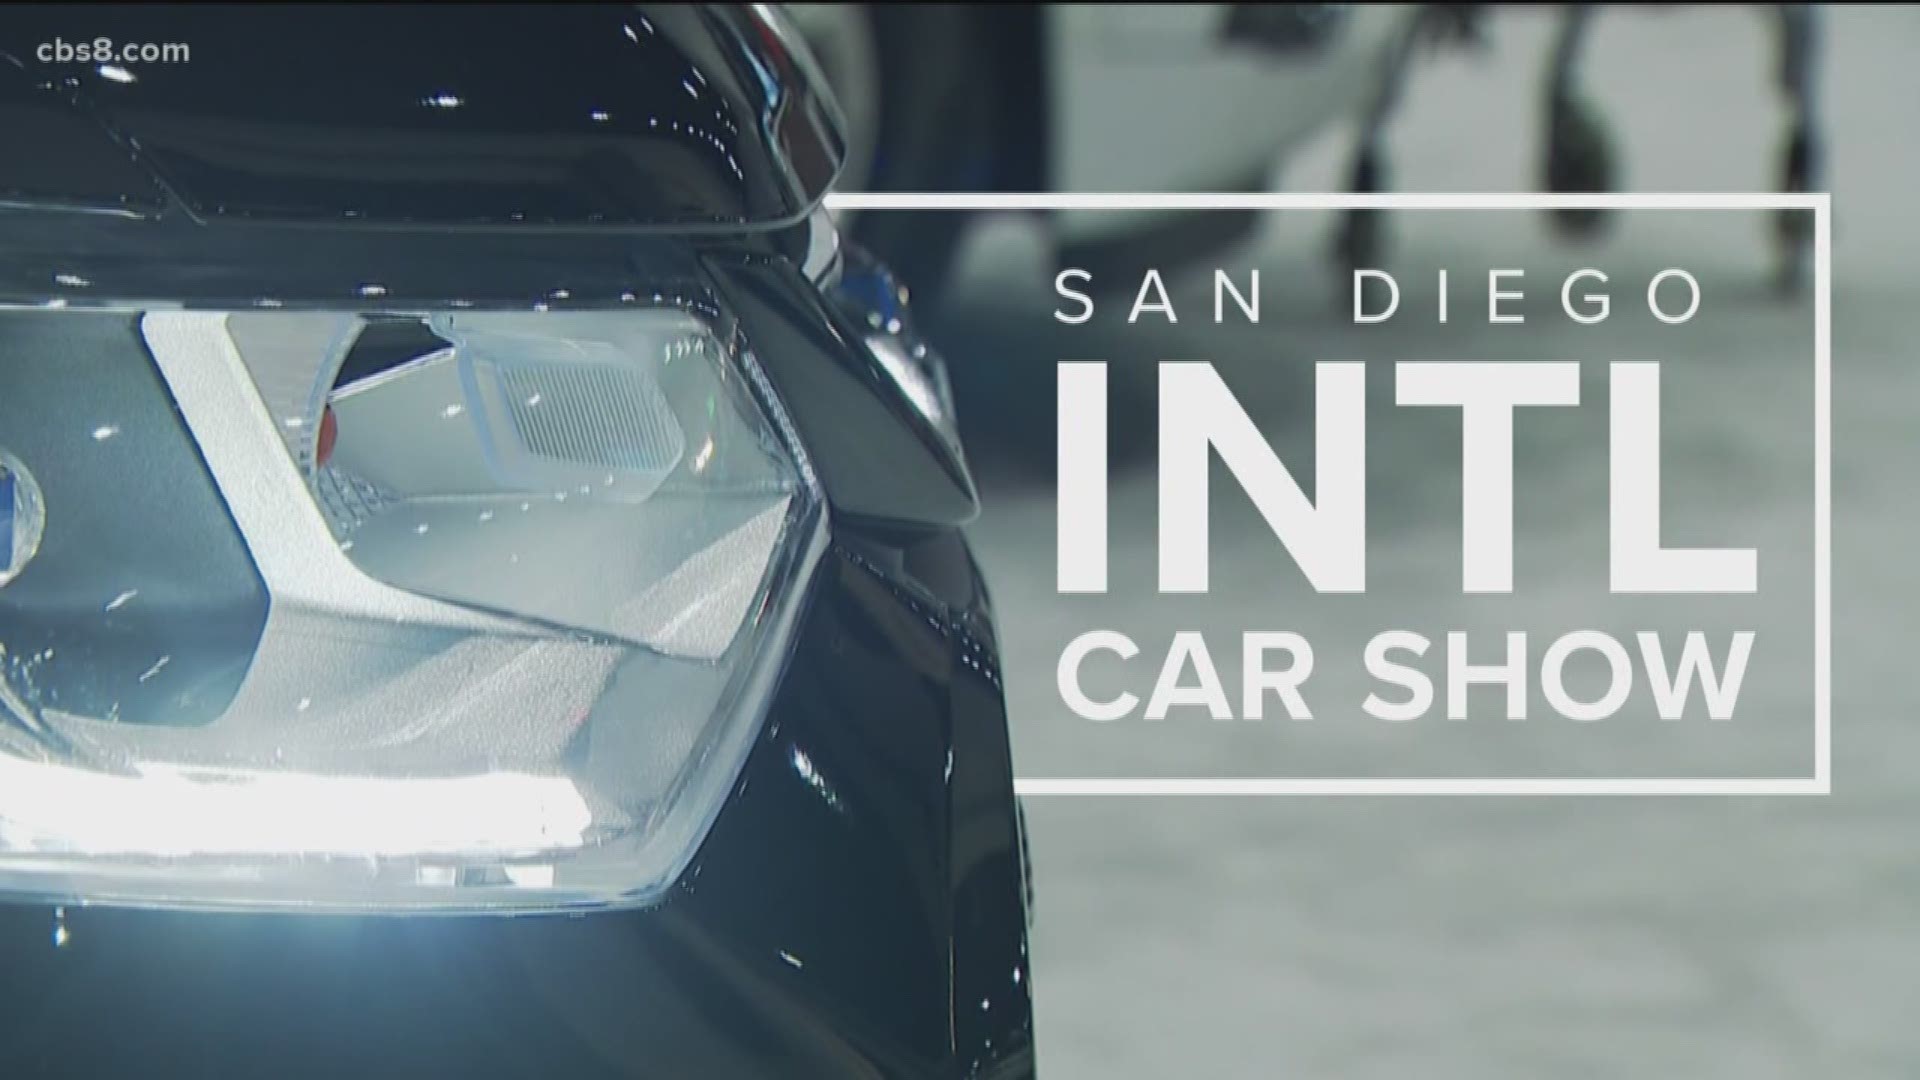 San Diego International Auto Show 2020